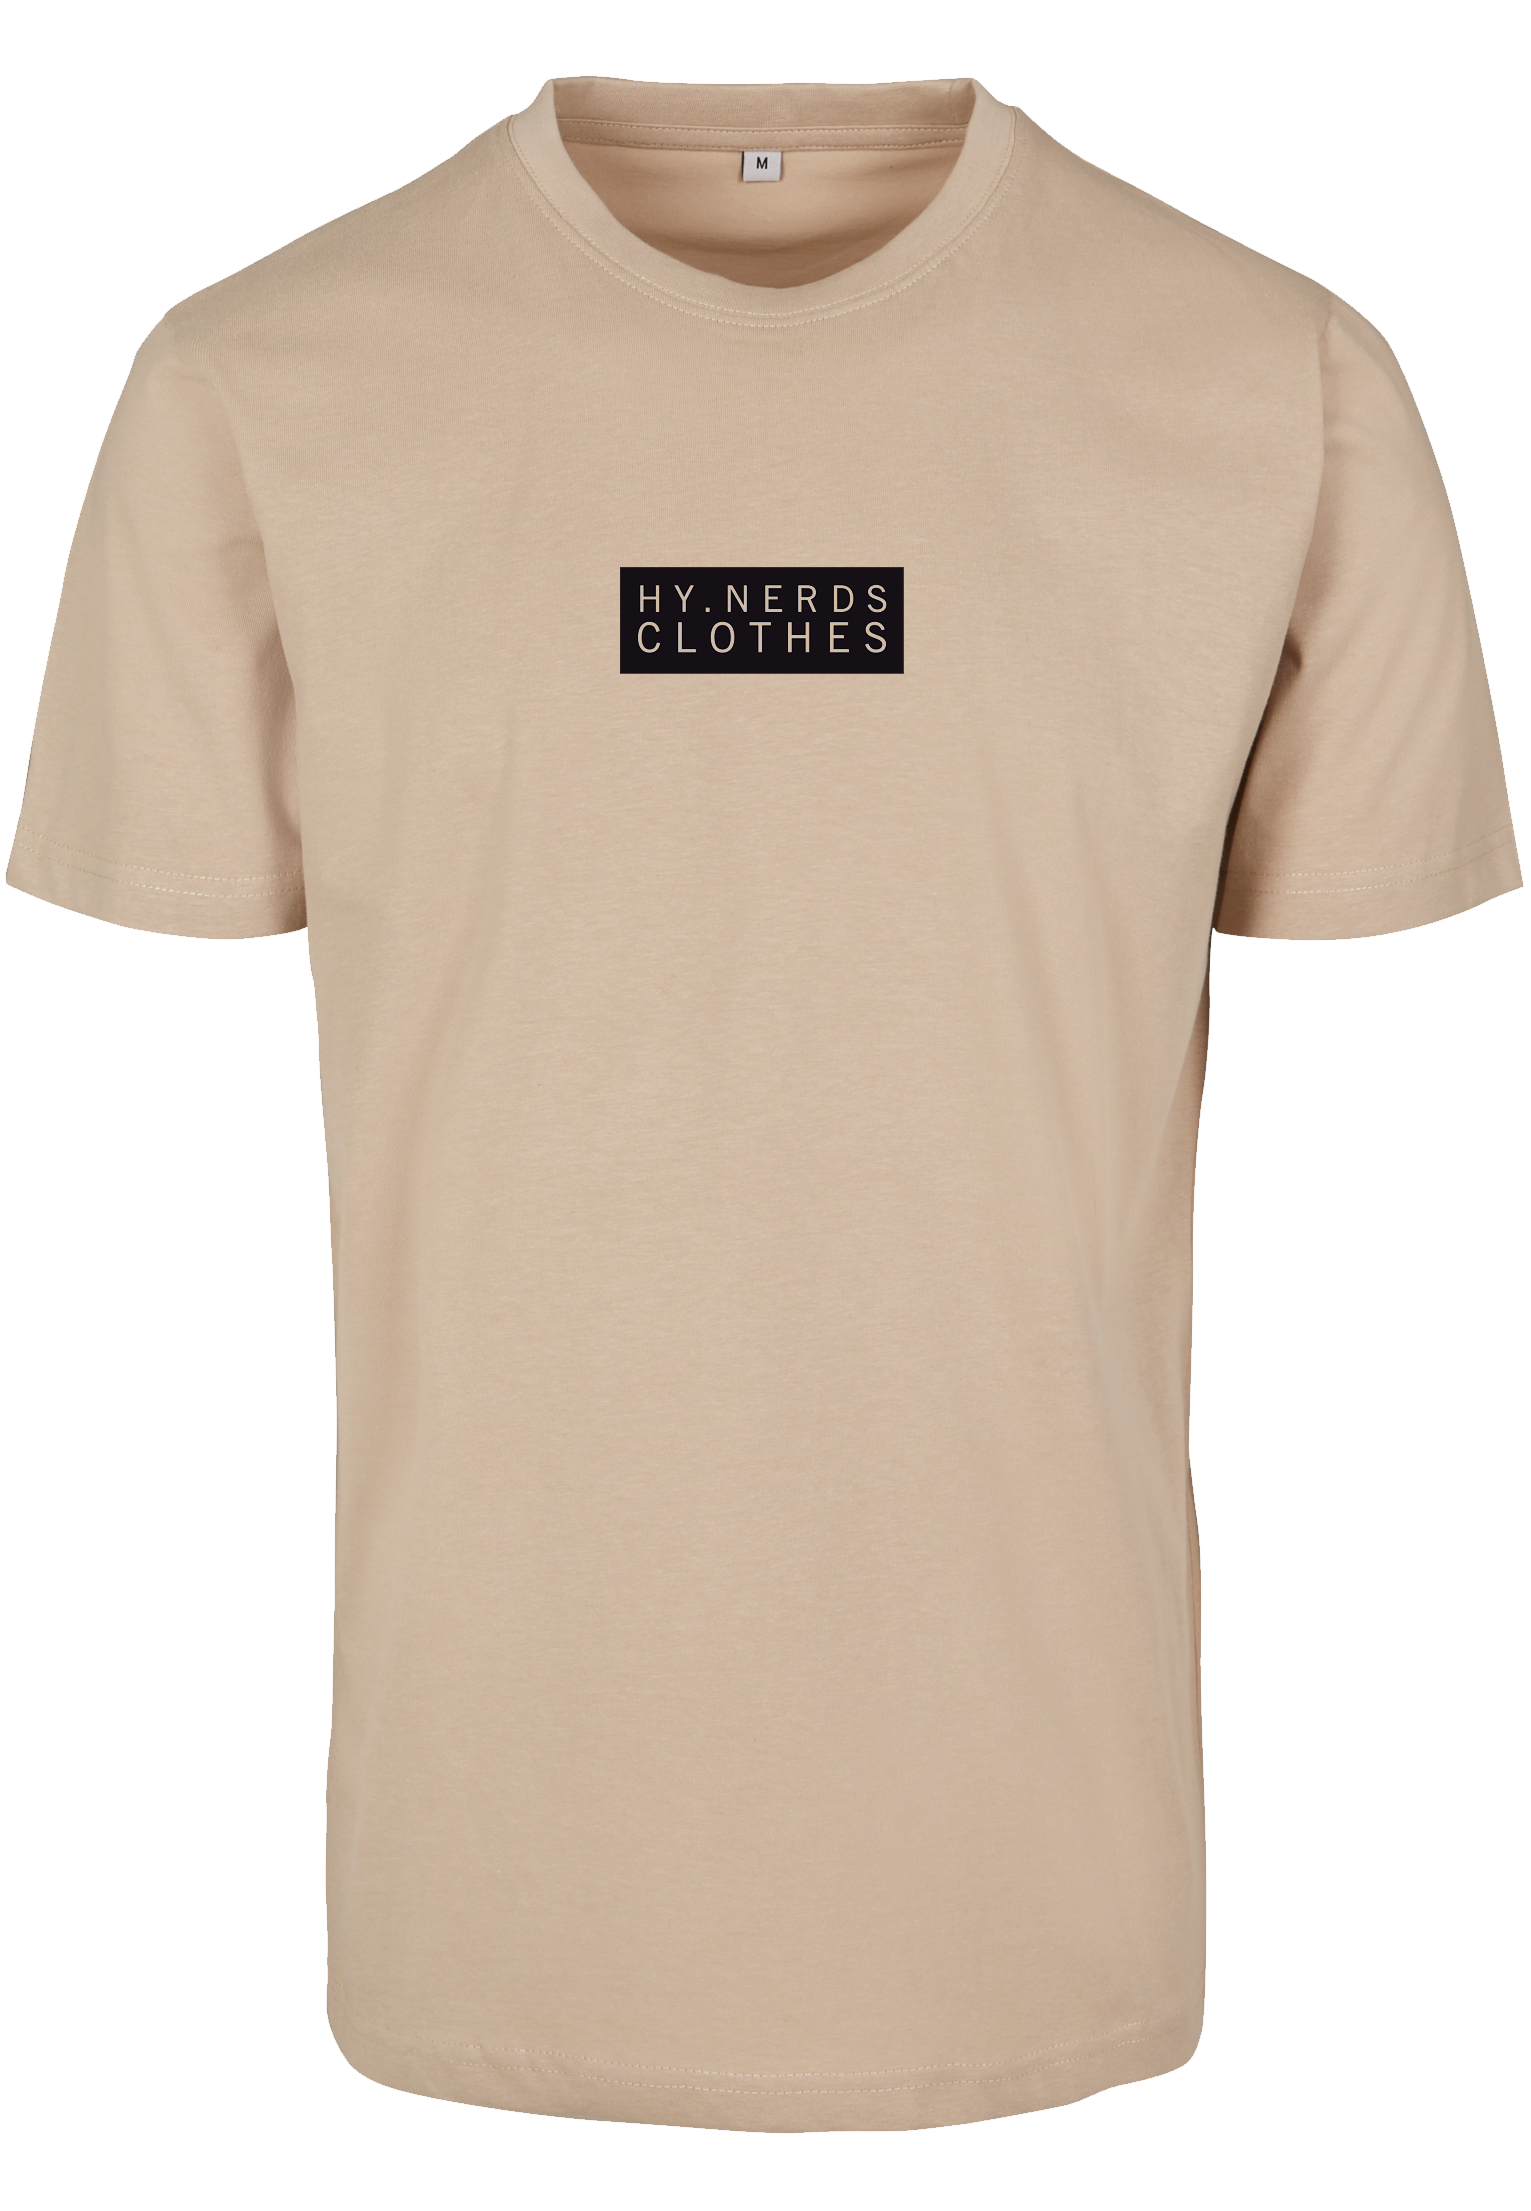 Polki sand T-Shirt